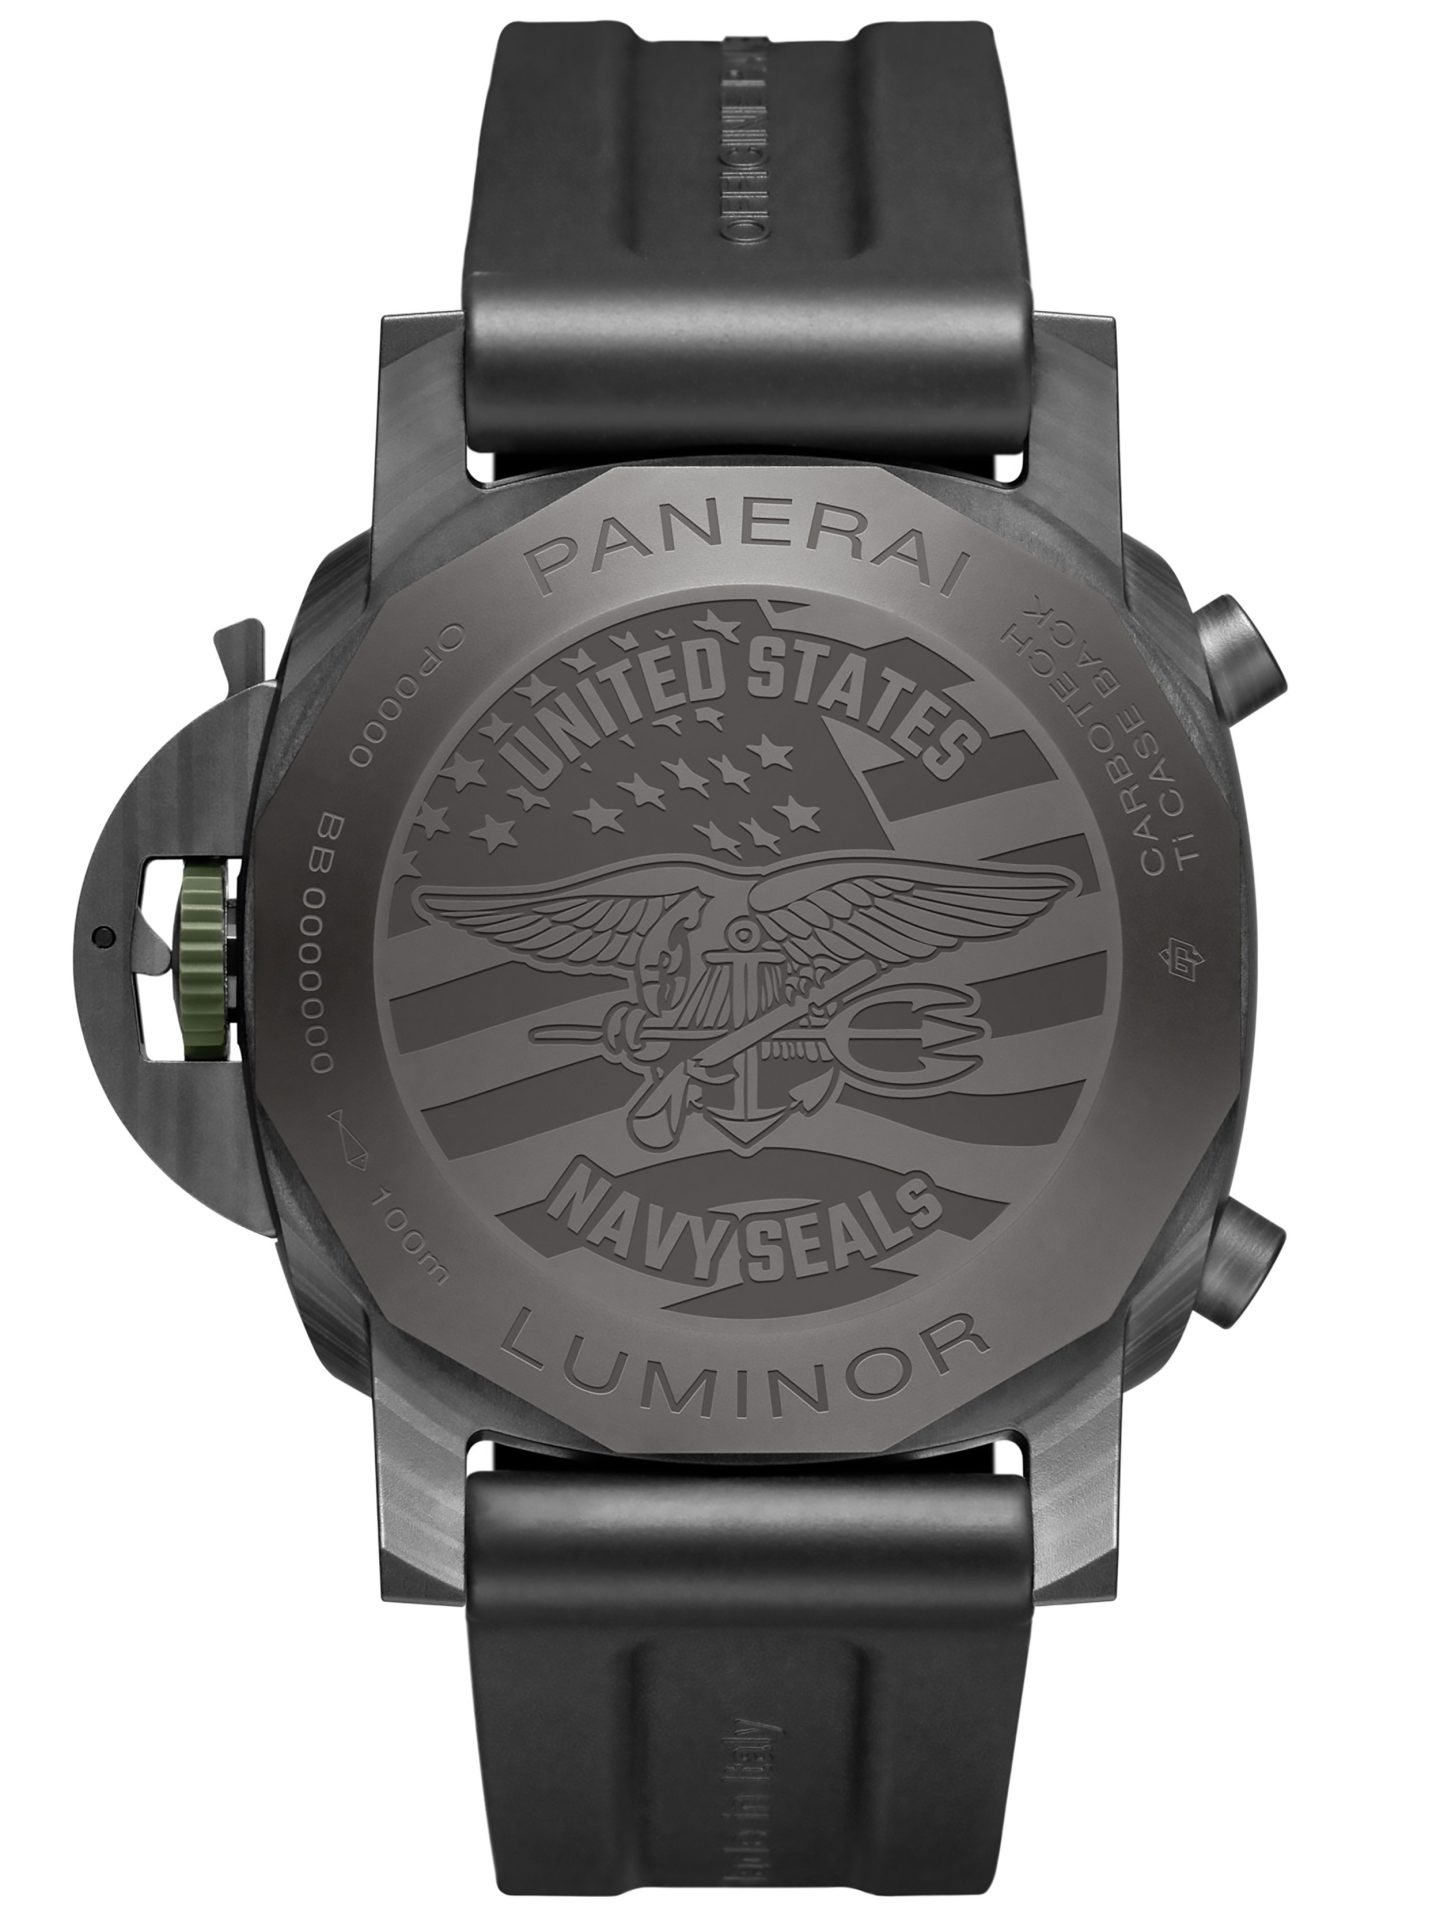 1695233008 849 Navy Seals Panerai Watches